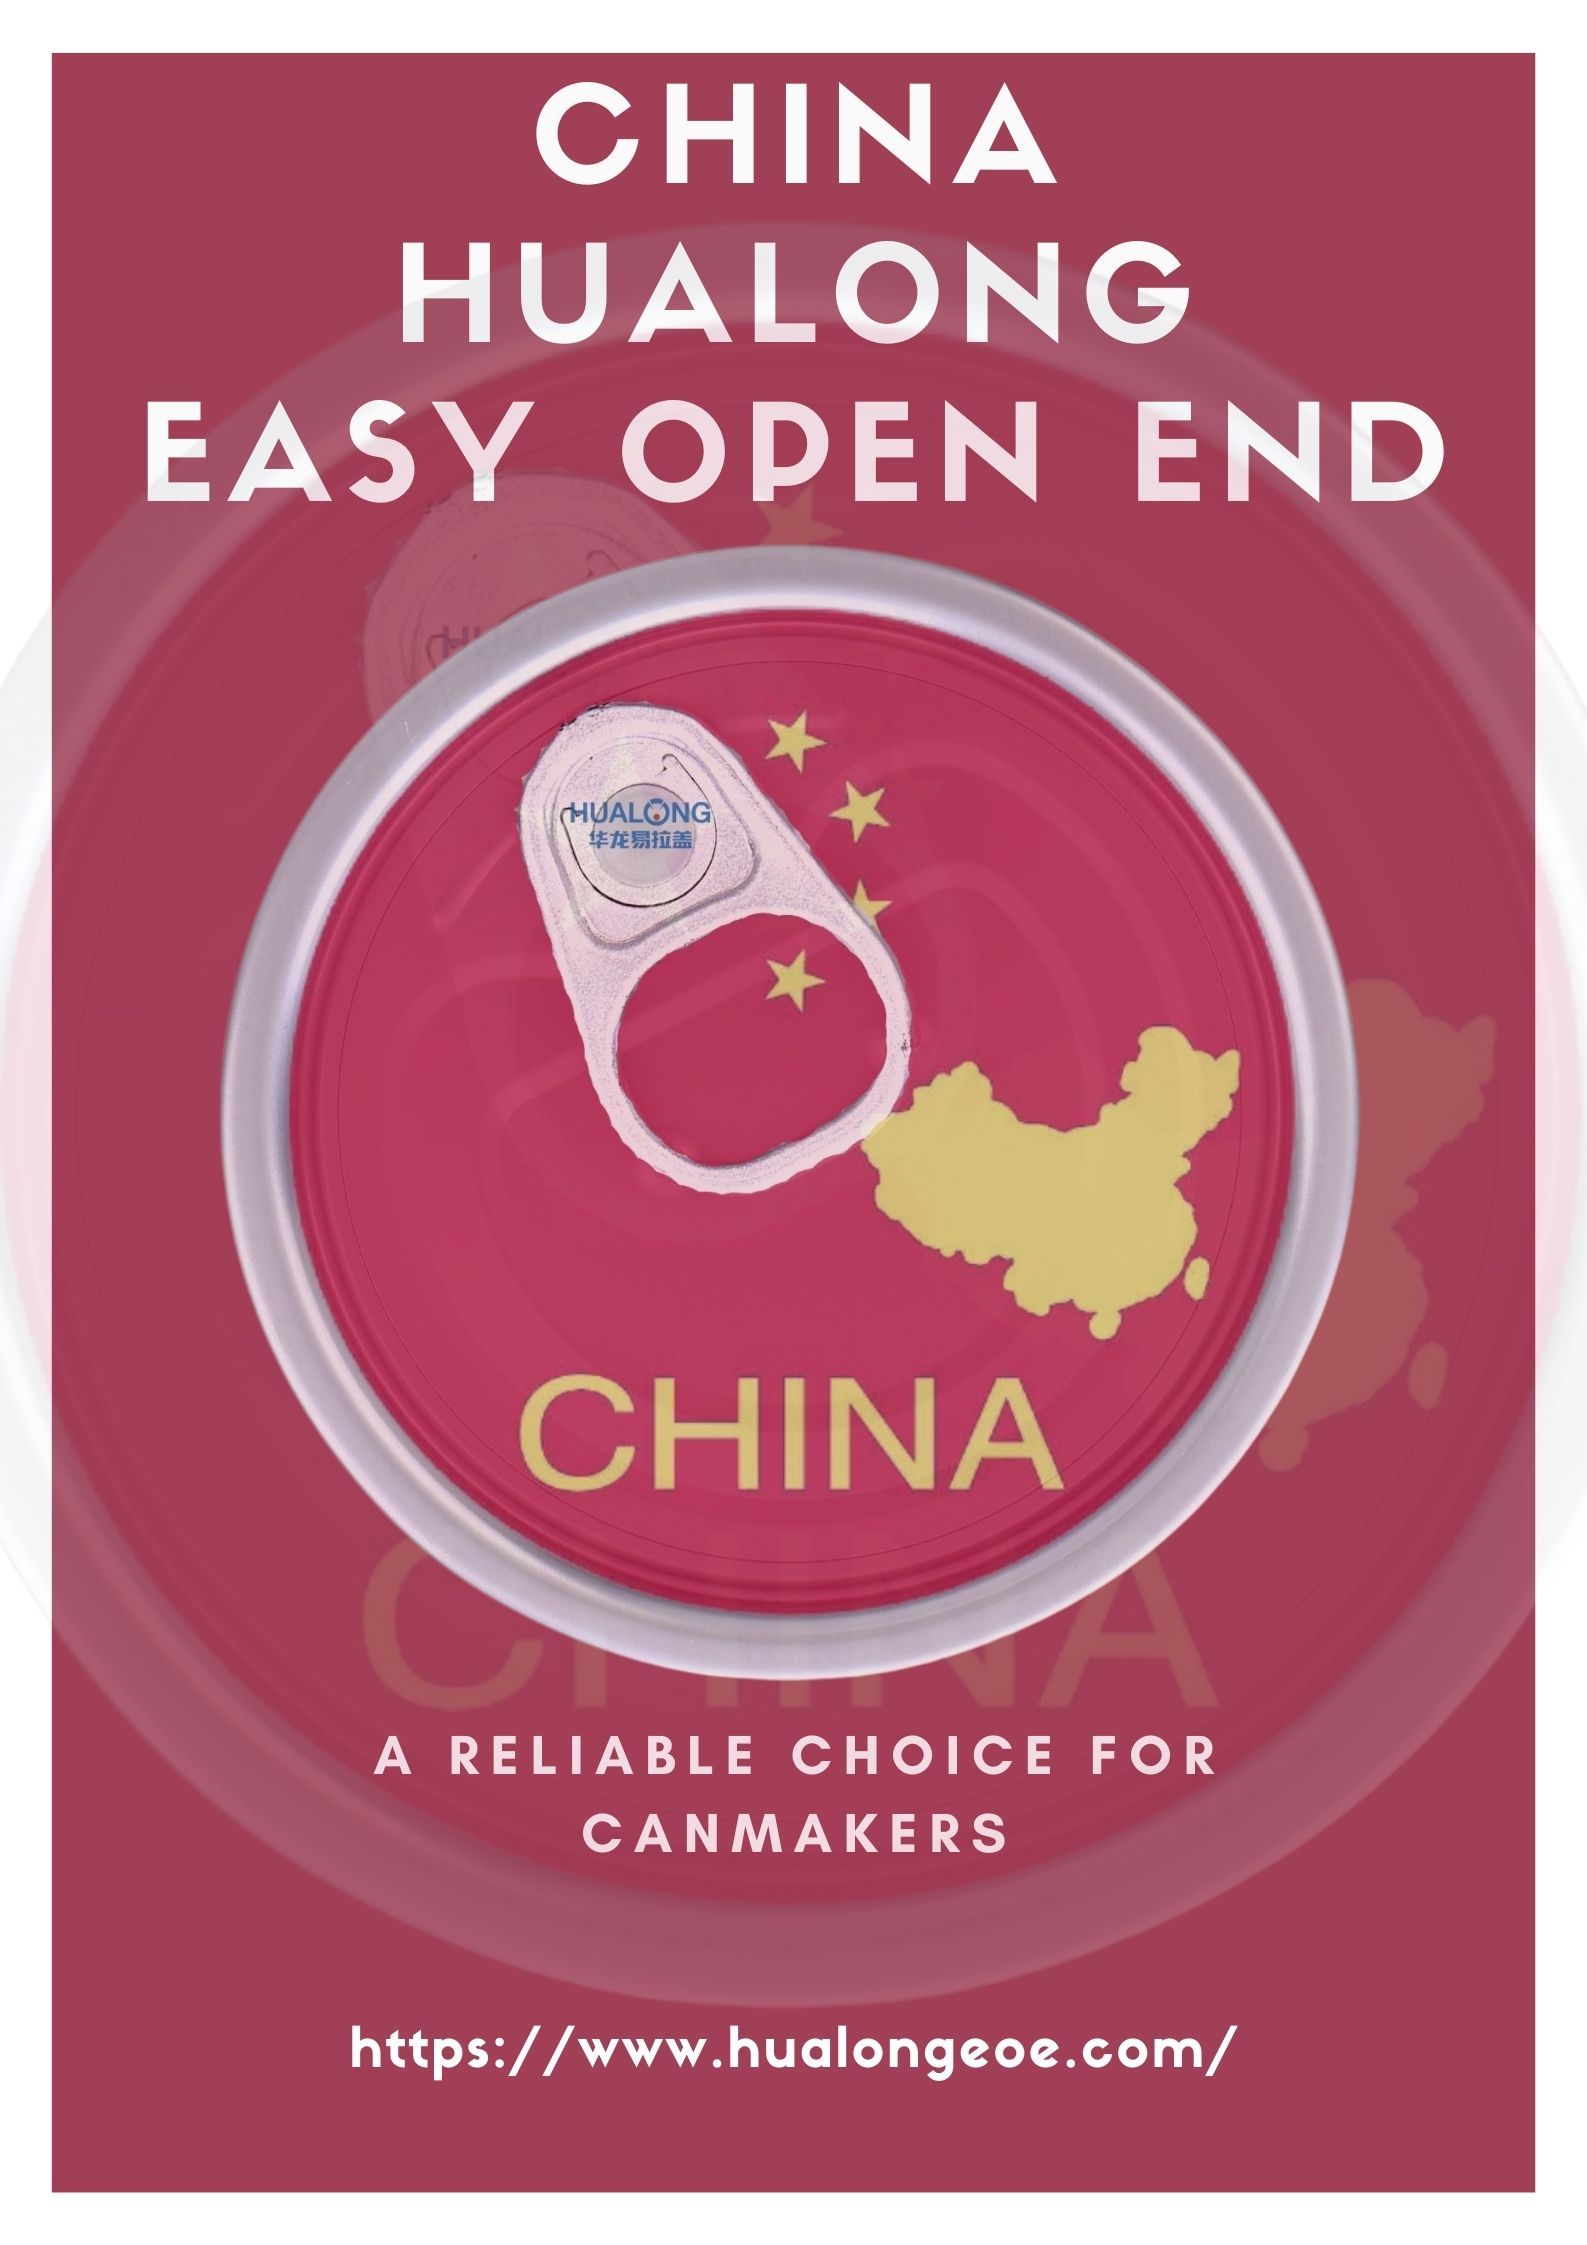 Hualong Easy Open End: O alegere de încredere pentru producătorii de cani